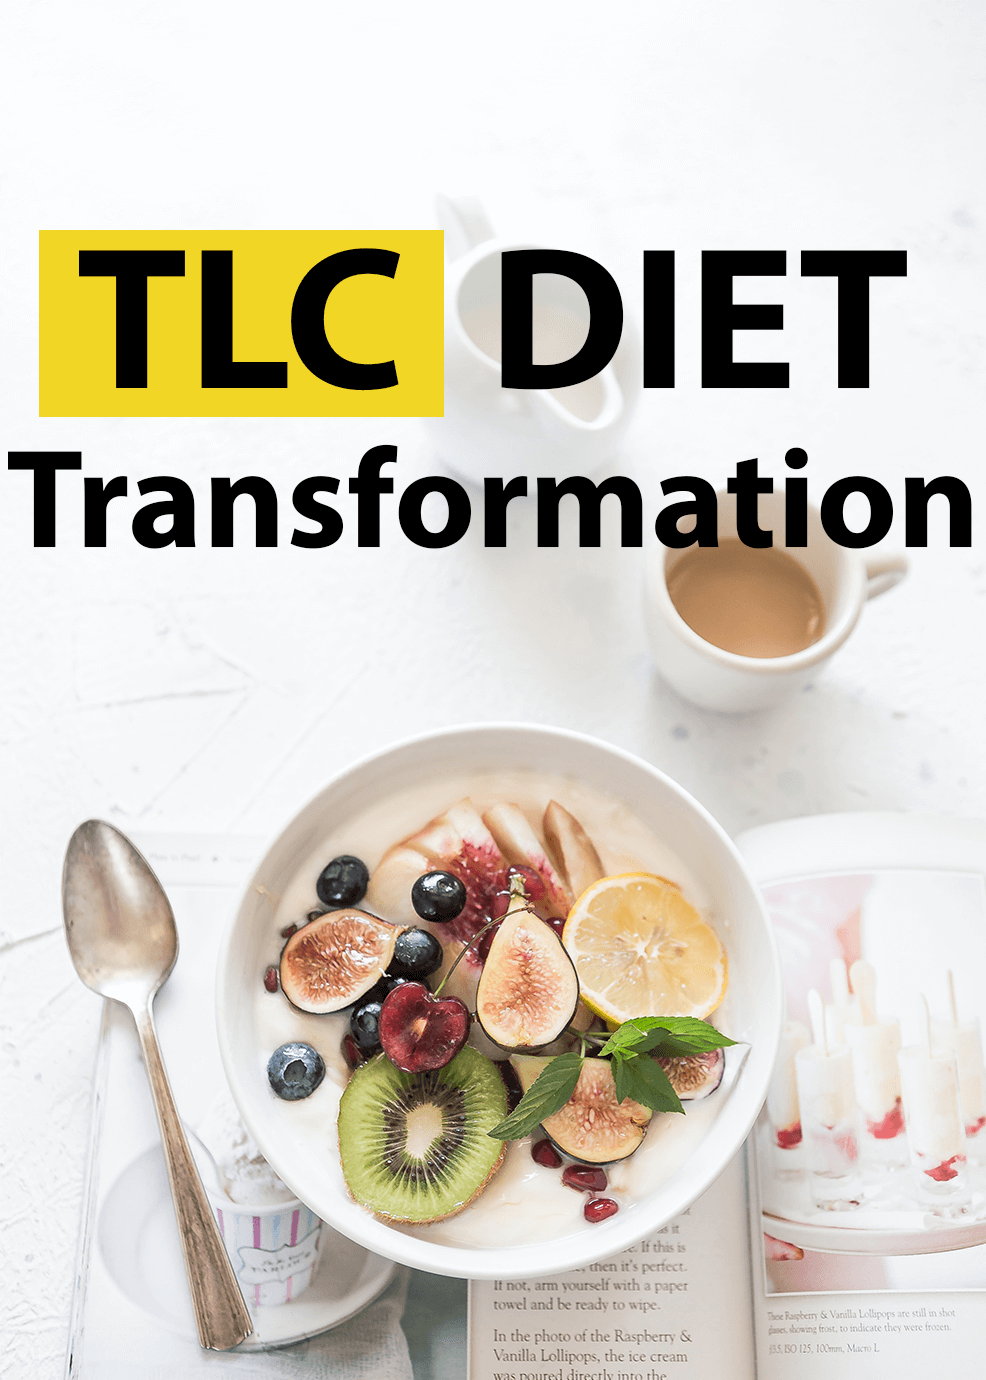 TLC Diet Transformation Videos